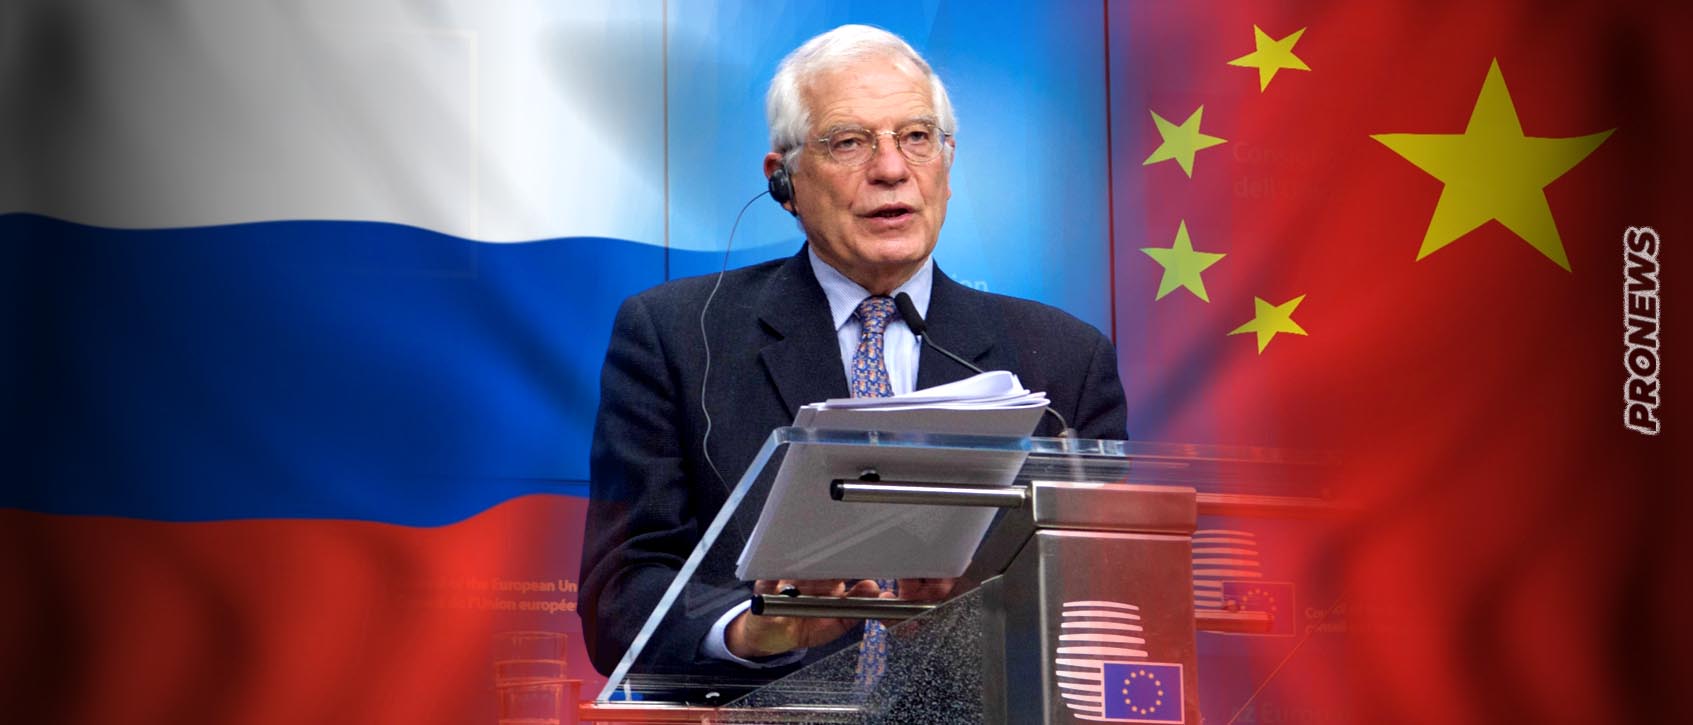 Ζ.Μπορέλ: «Αν η Κίνα προμήθευε με όπλα τη Ρωσία θα πέρναγε την ”κόκκινη γραμμή” της ΕΕ»